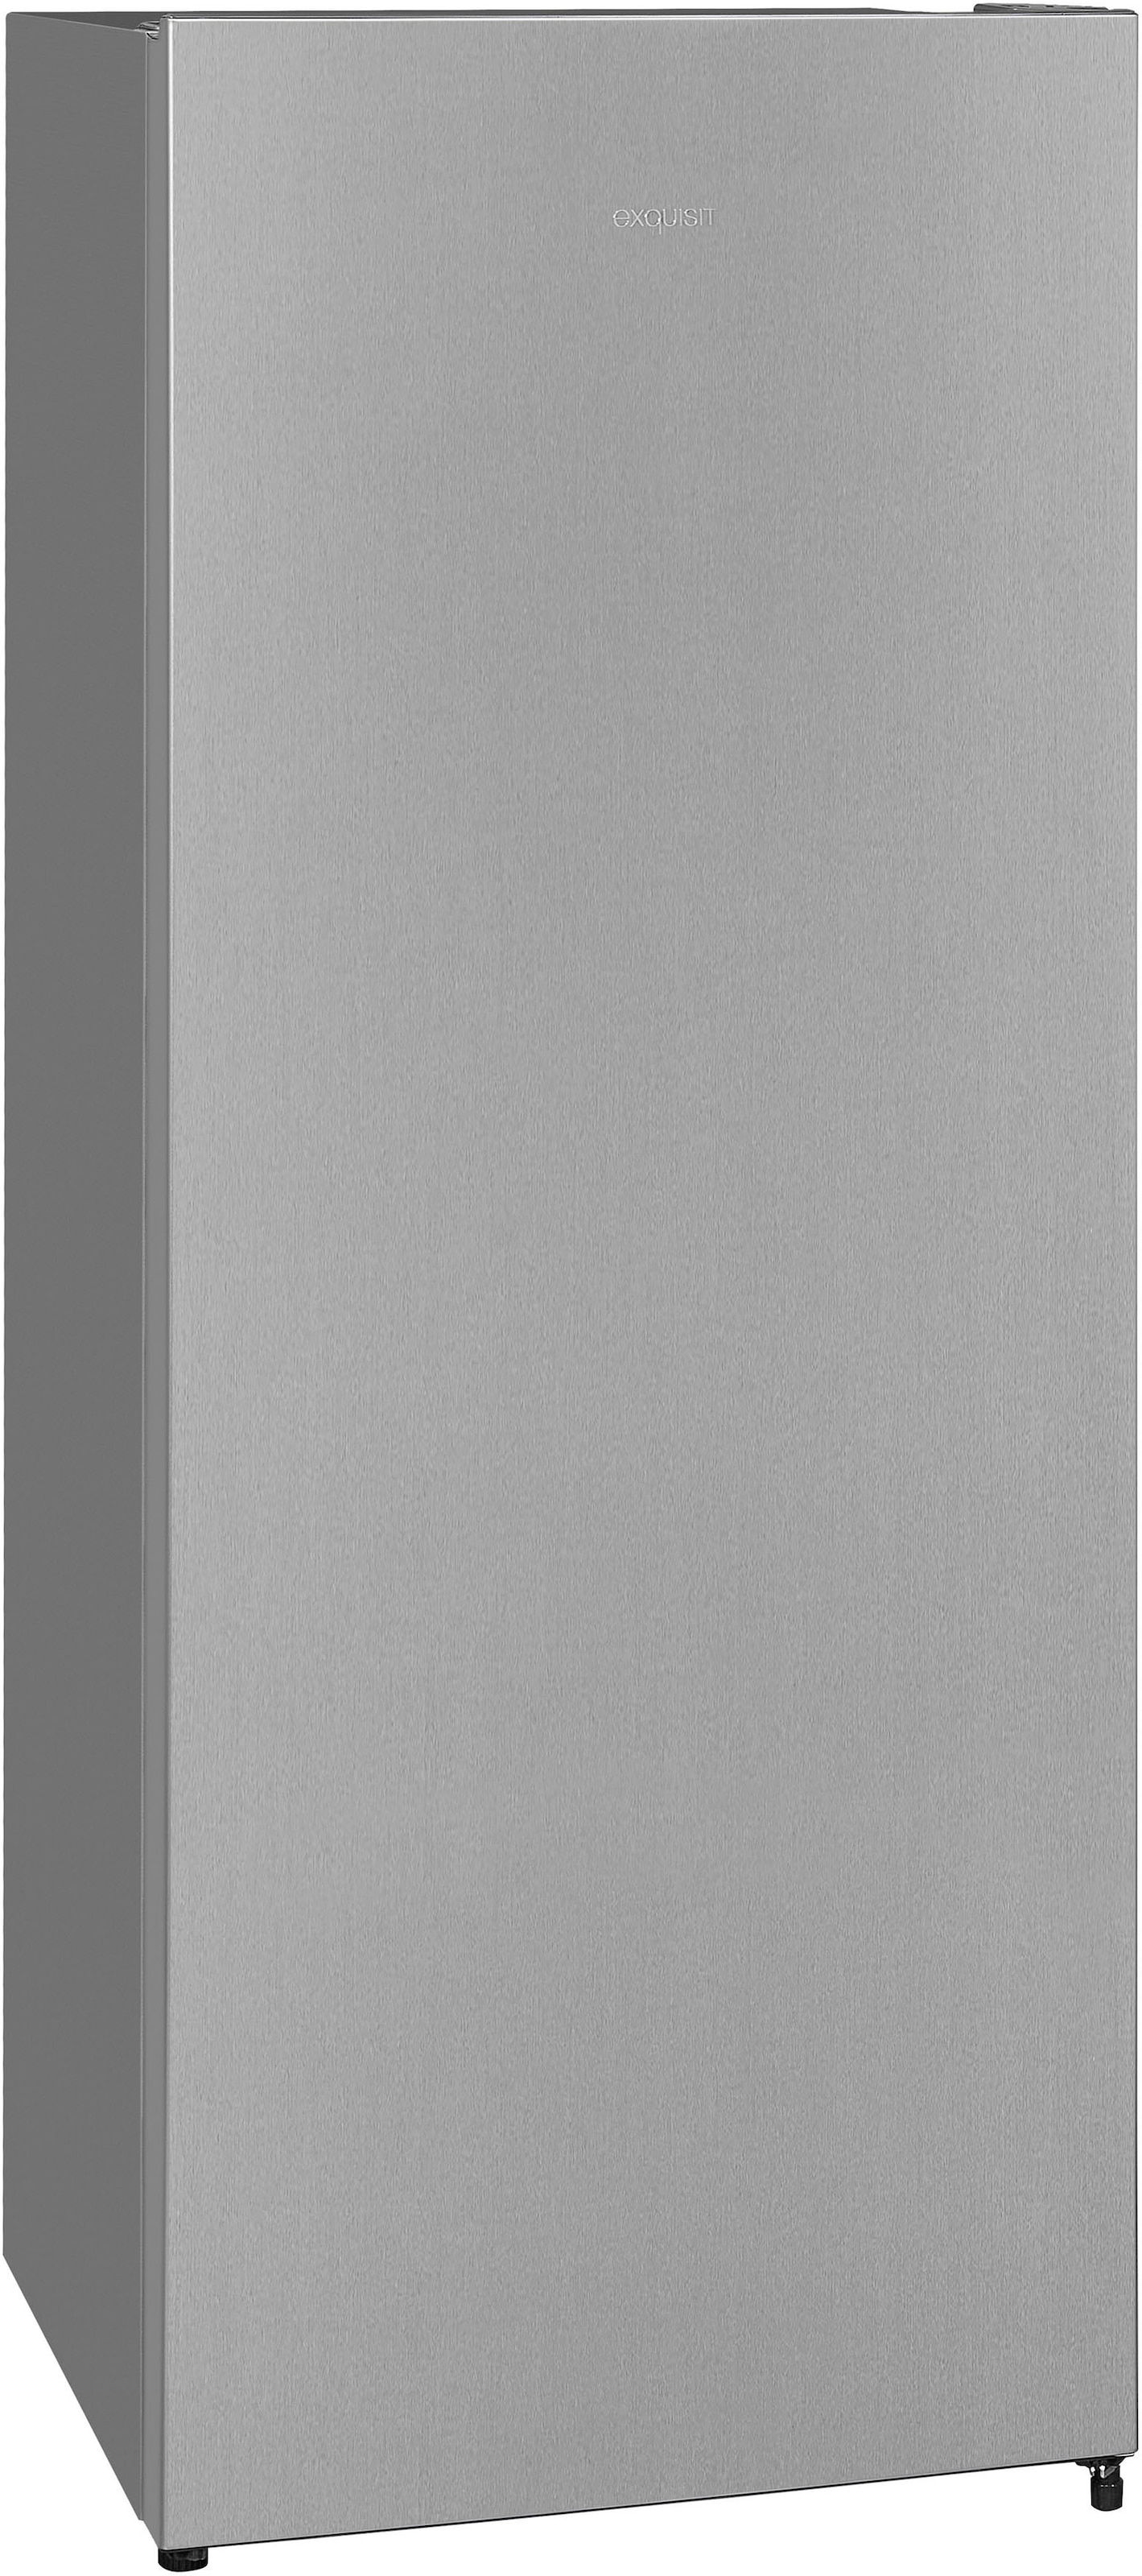 exquisit Vollraumkühlschrank, KS320-V-010E inoxlook, breit kaufen 55,0 143,4 cm cm hoch